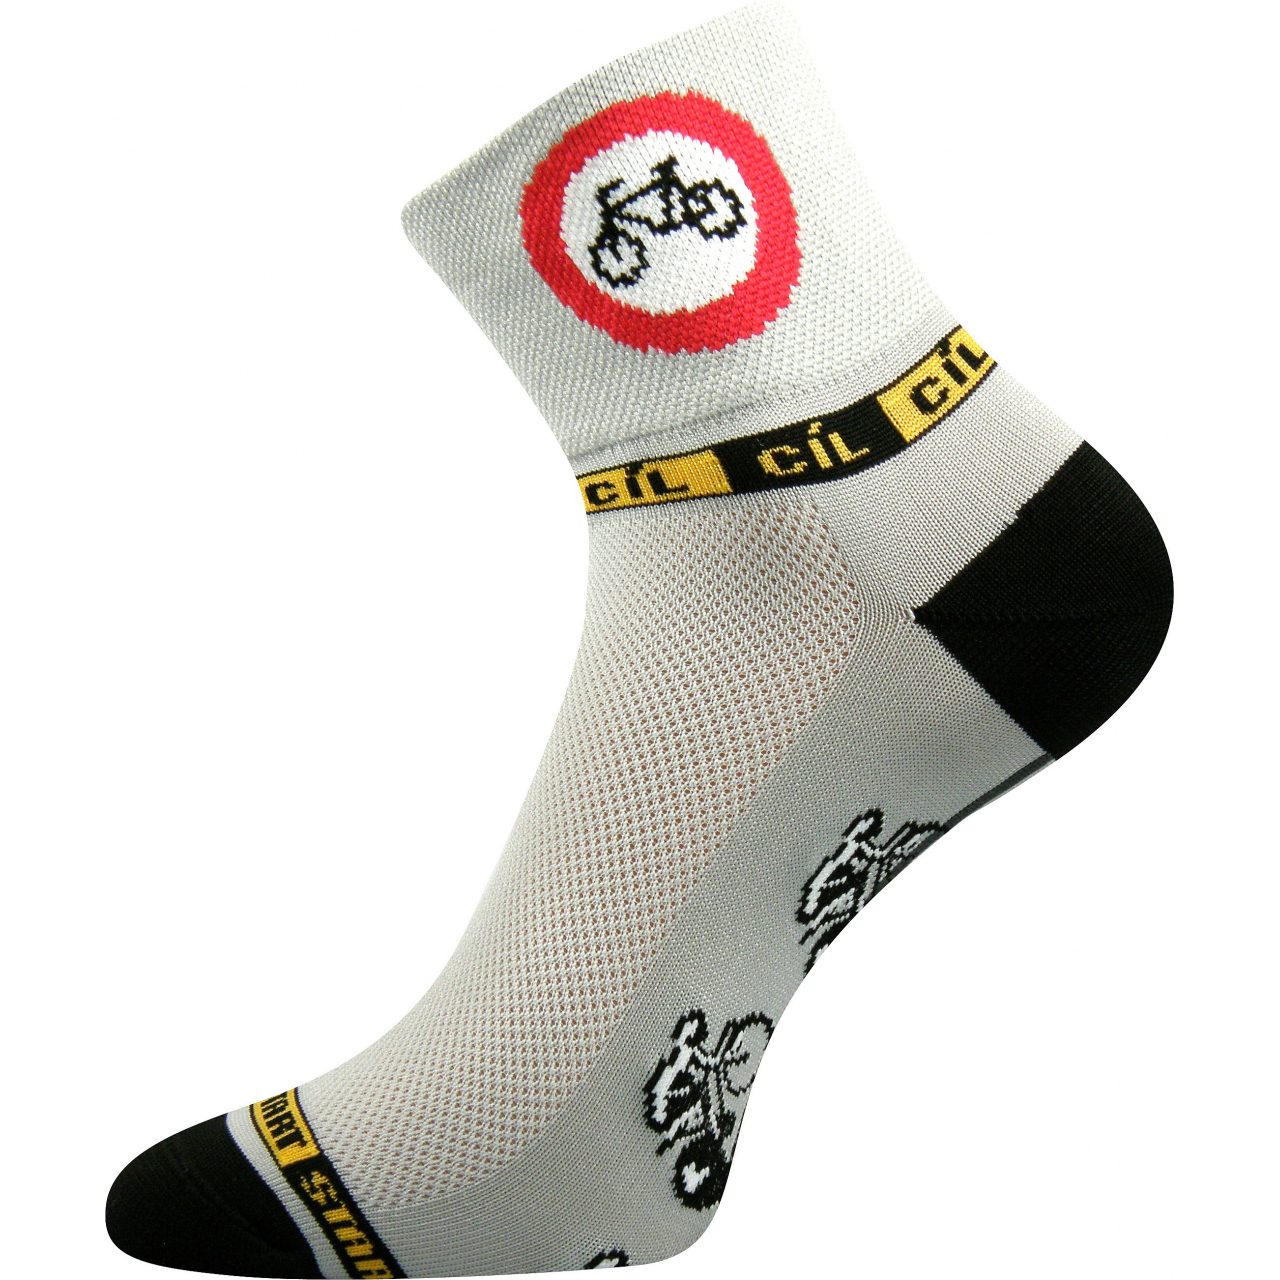 Ponožky sportovní unisex Voxx Ralf X Kolo - šedé-černé, 35-38